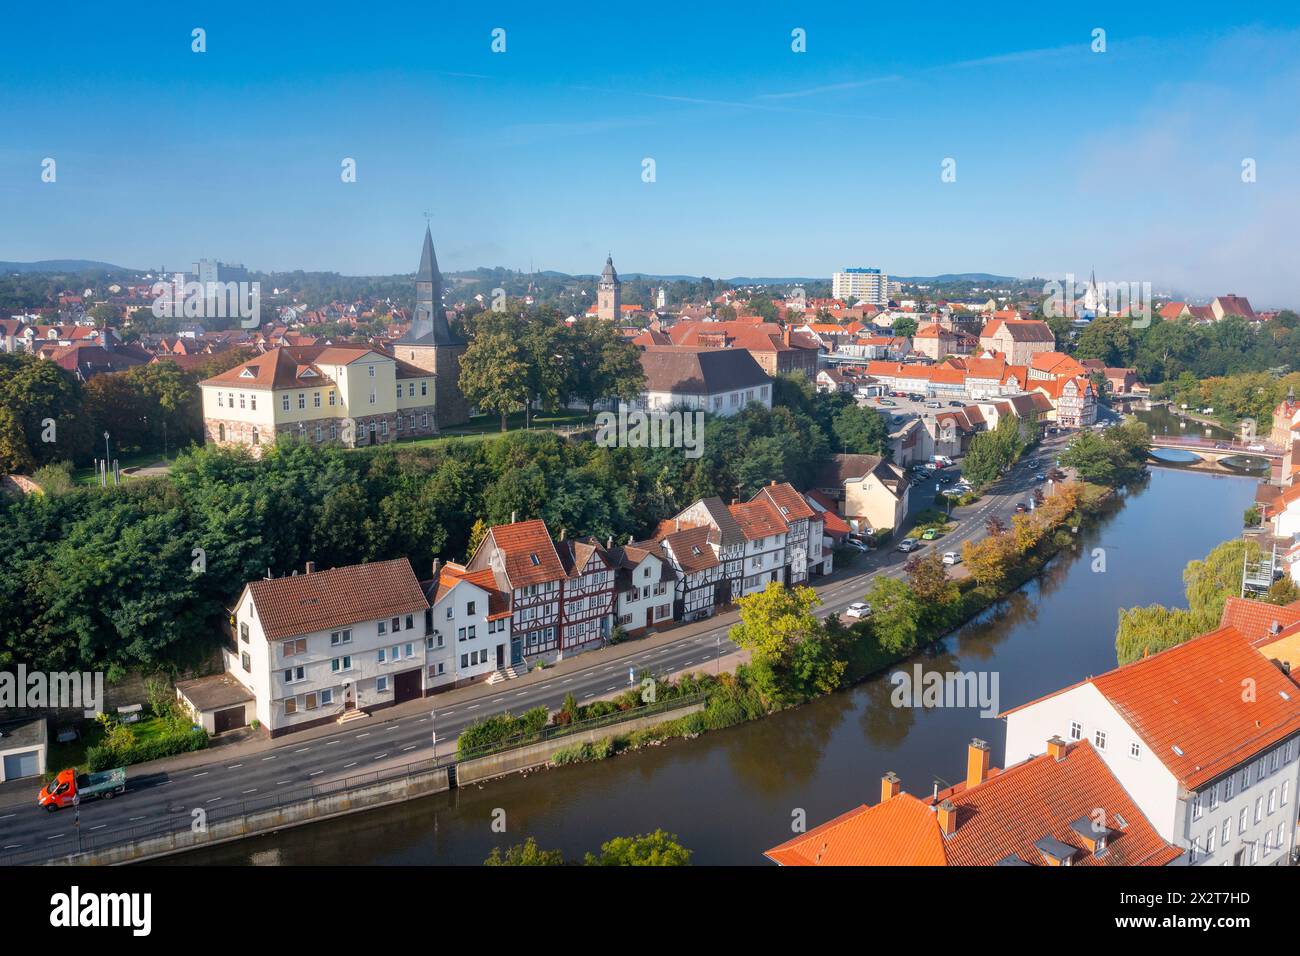 Germania, Assia, Eschwege, vista aerea delle case storiche lungo il fiume Werra Foto Stock